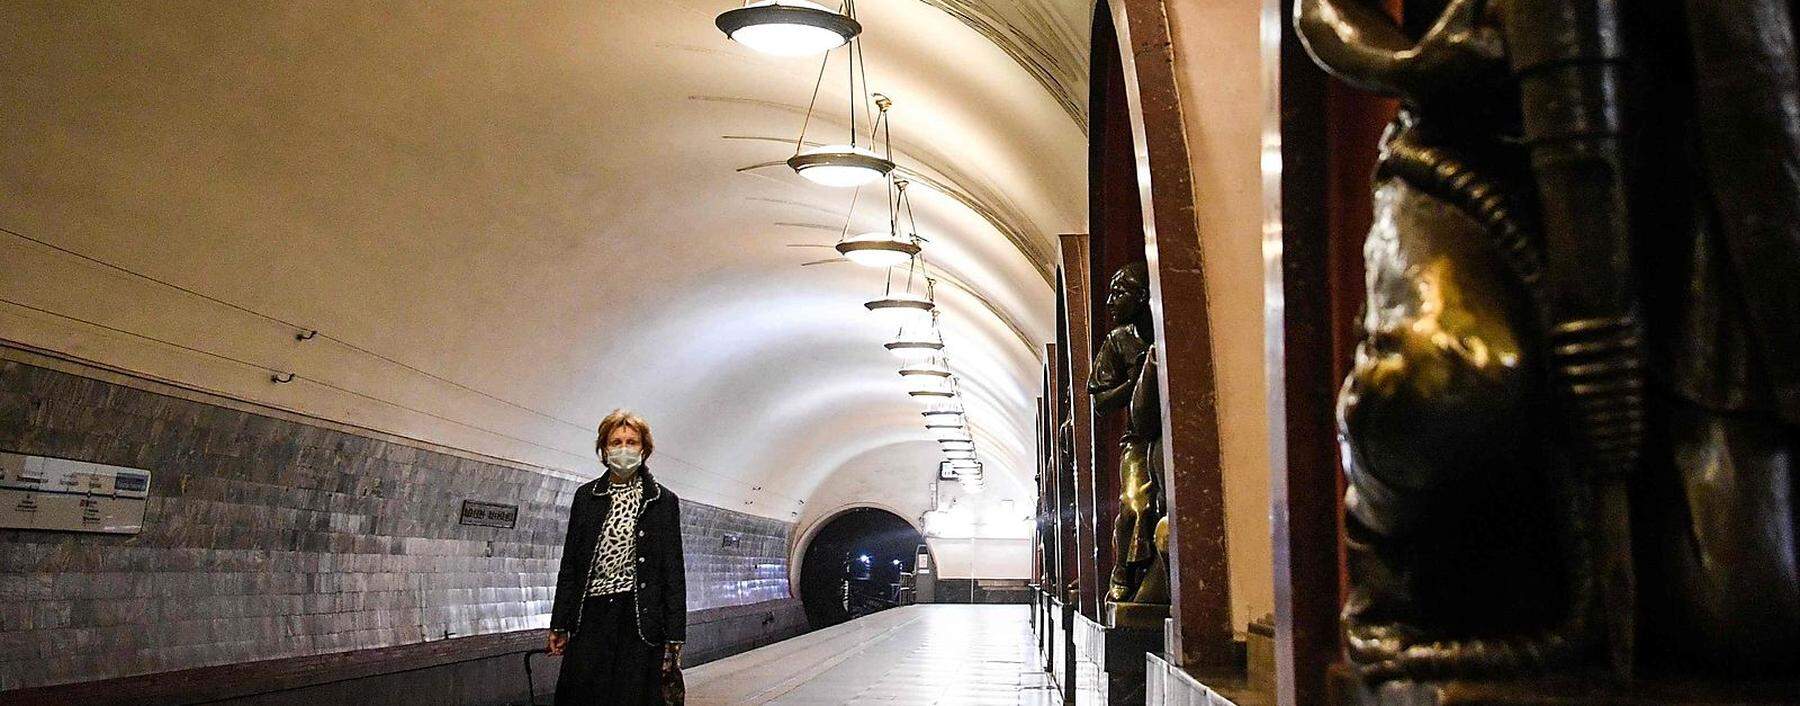 Seit Dienstag gilt Masken- und Handschuhpflicht in der Moskauer Metro